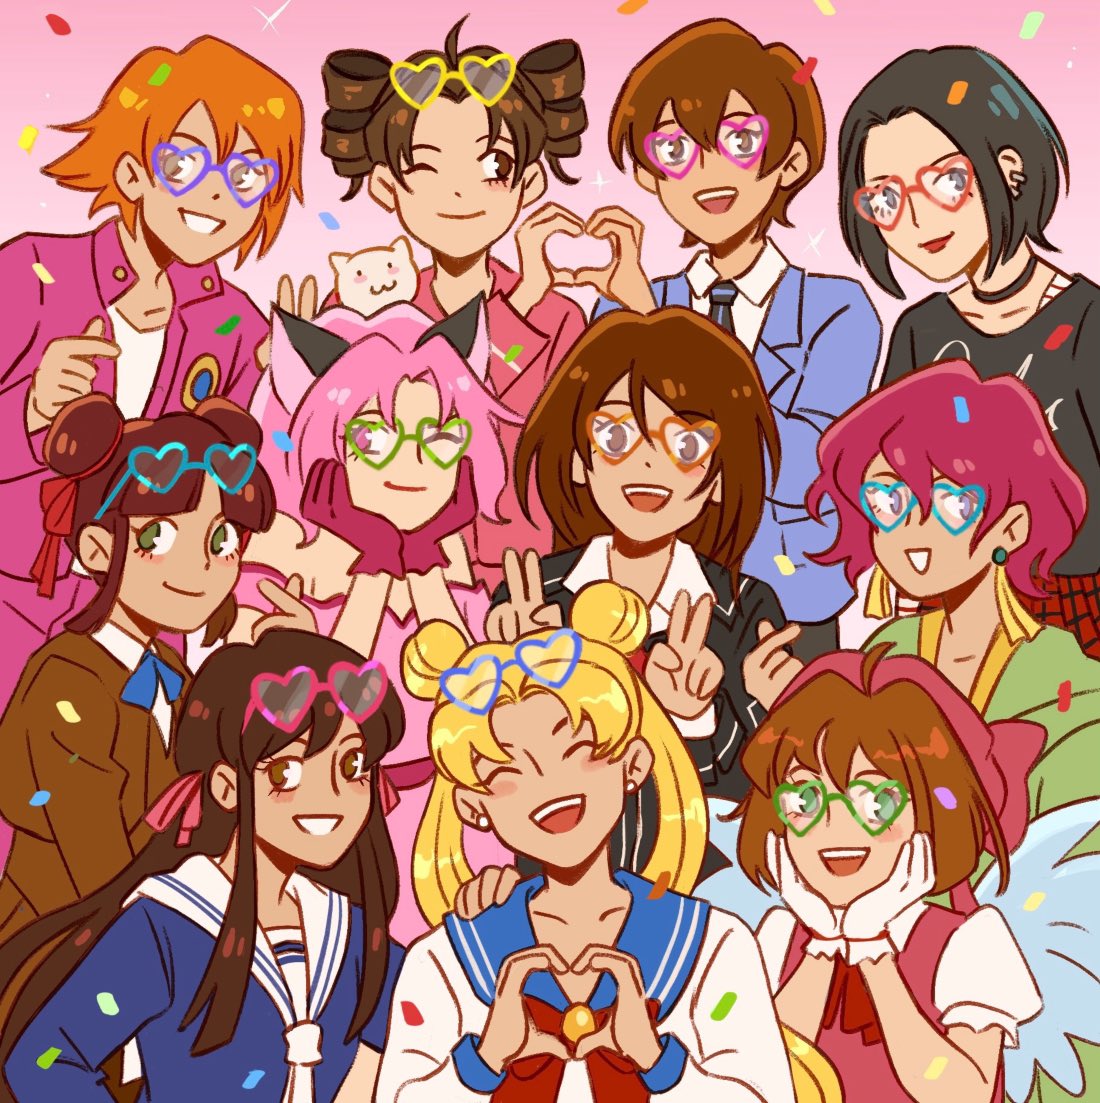 kinomoto sakura multiple girls heart 6+girls brown hair school uniform smile hands on own face  illustration images